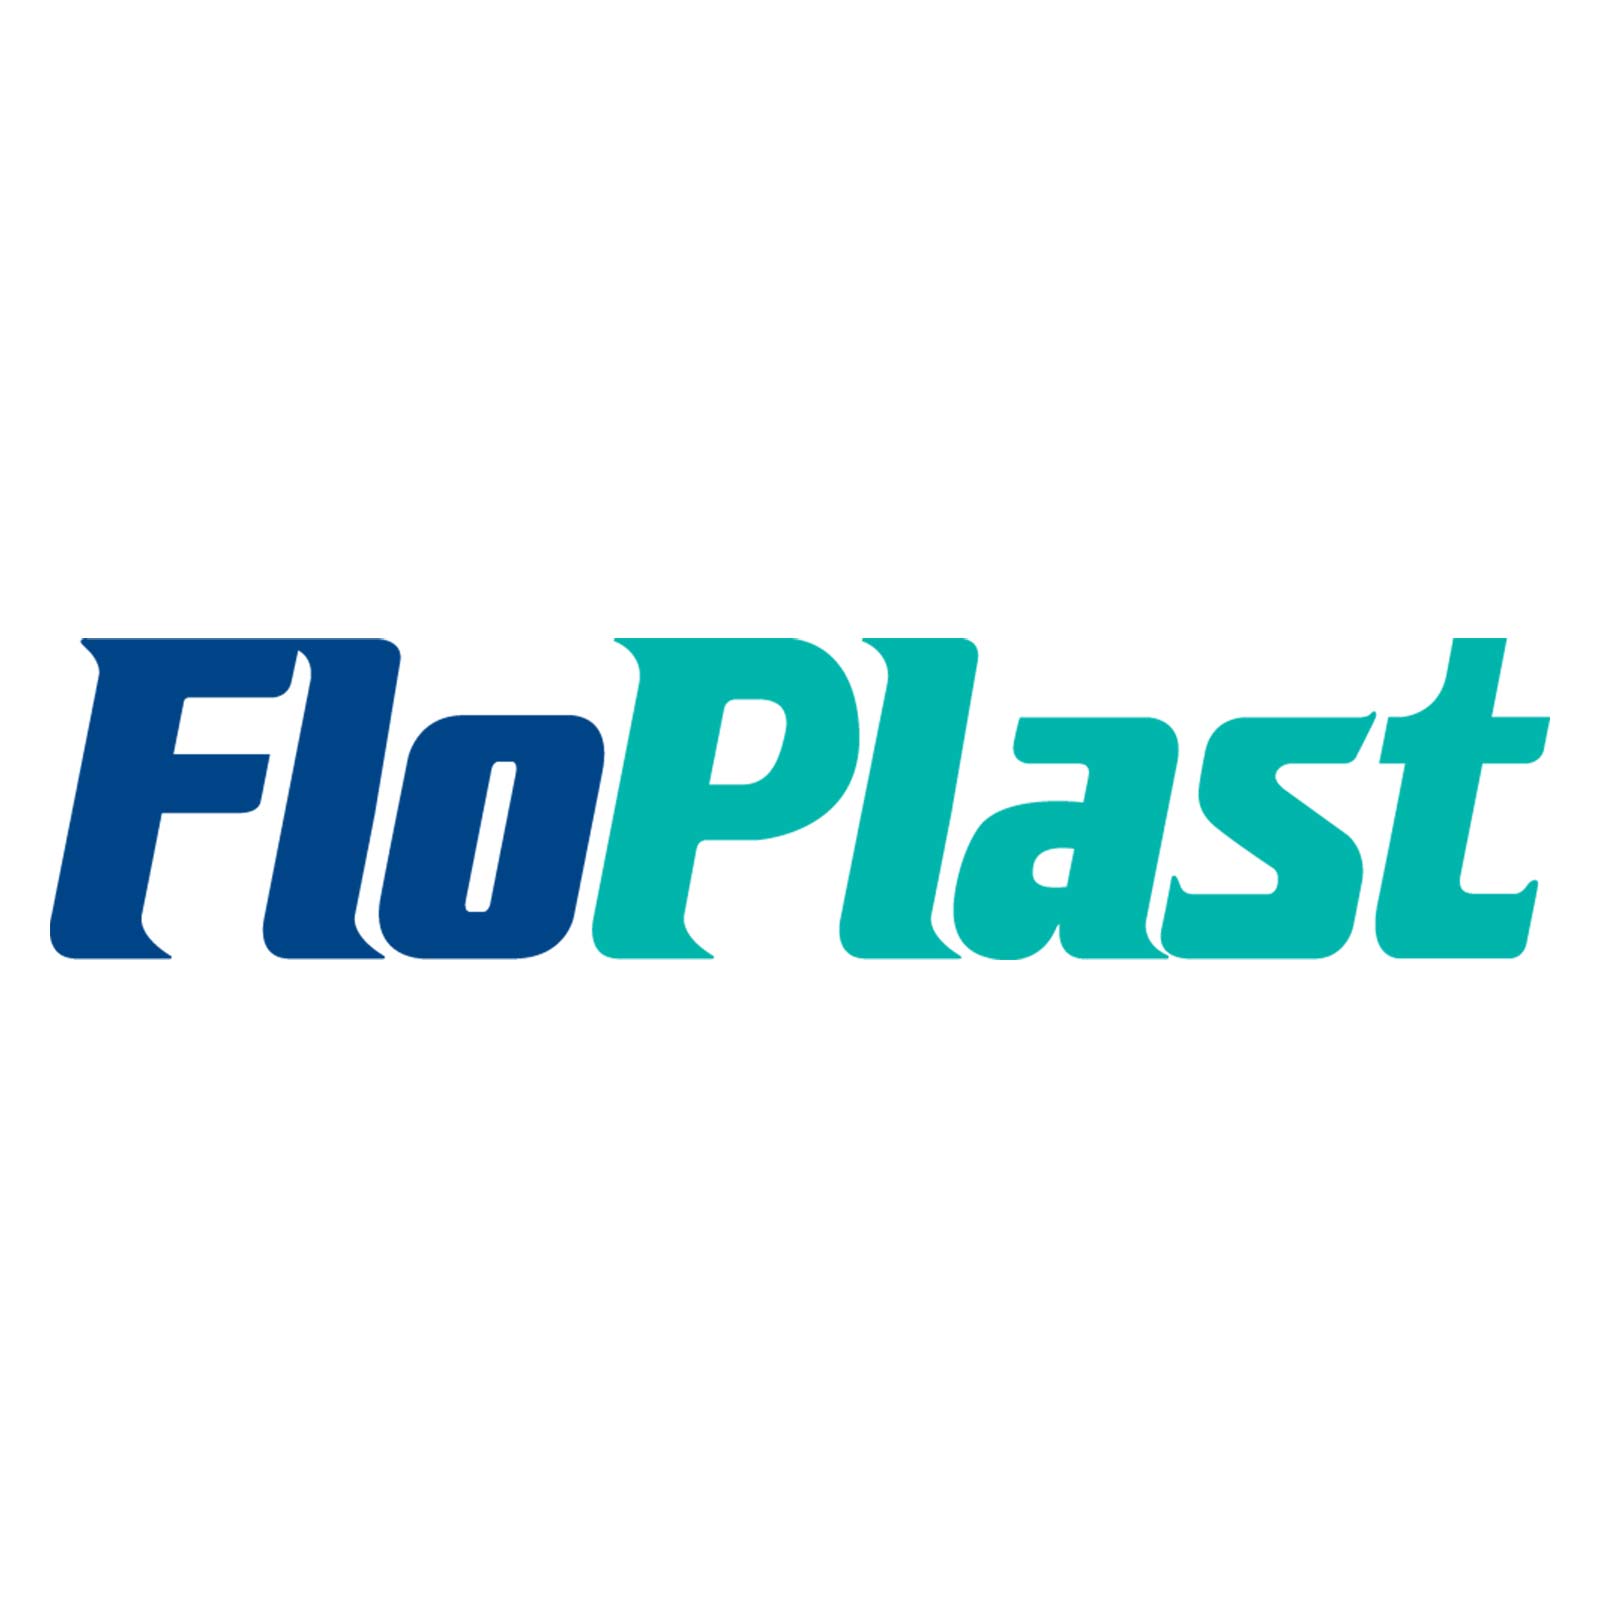 Floplast